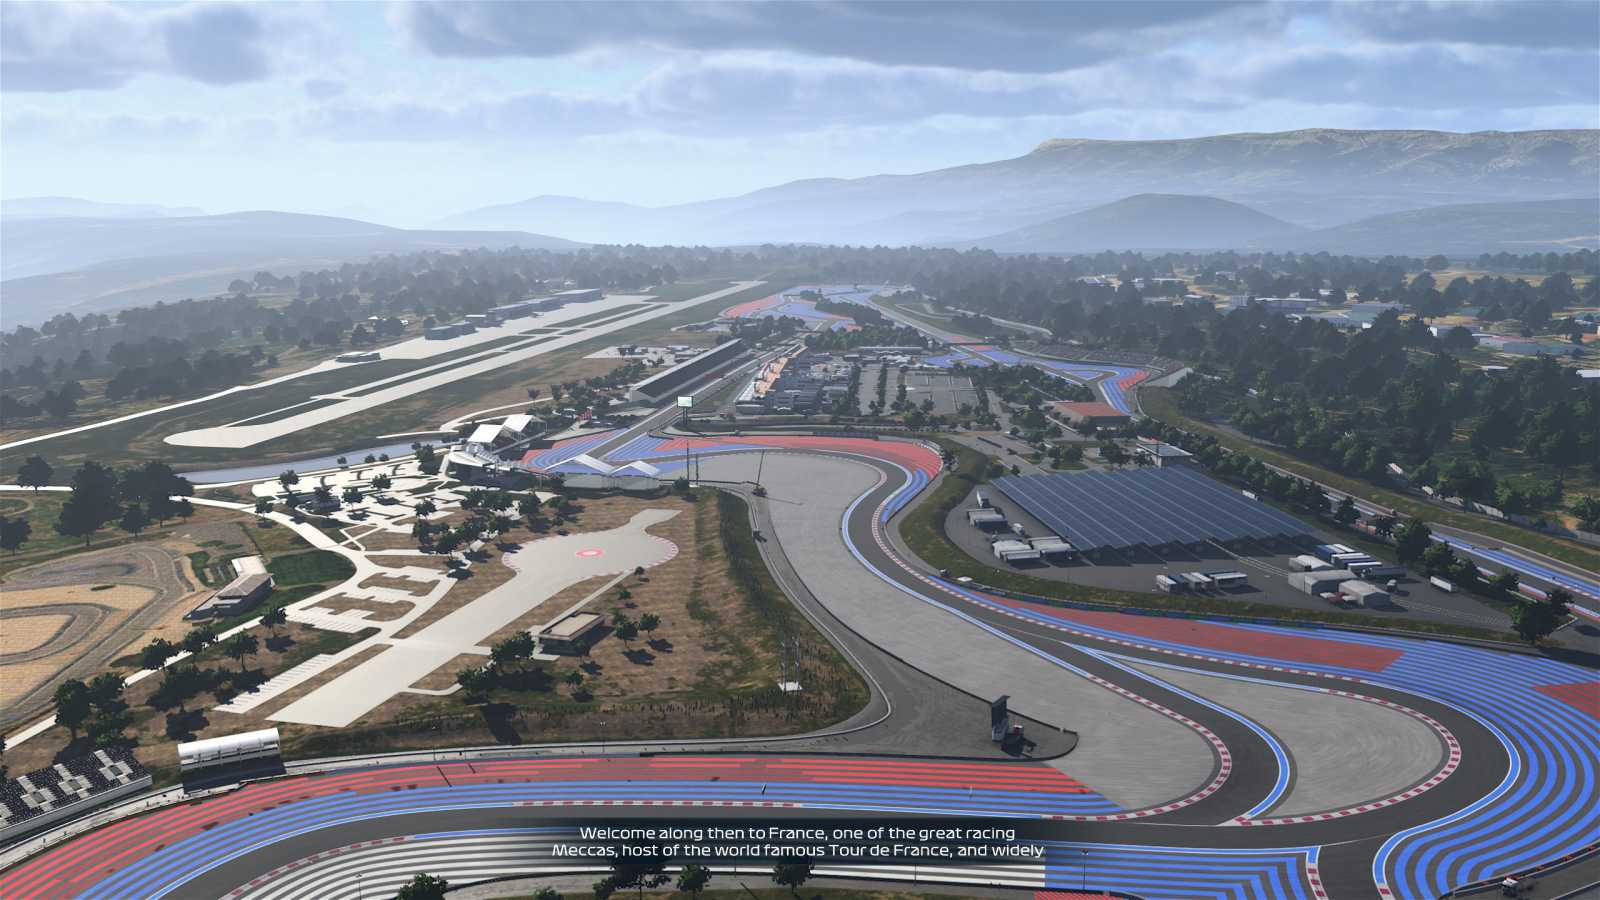 Okruh Paula Ricarda, aneb vizuálně nejkrásnější a zároveň nejnudnější okruh Formule 1 v celé své kráse